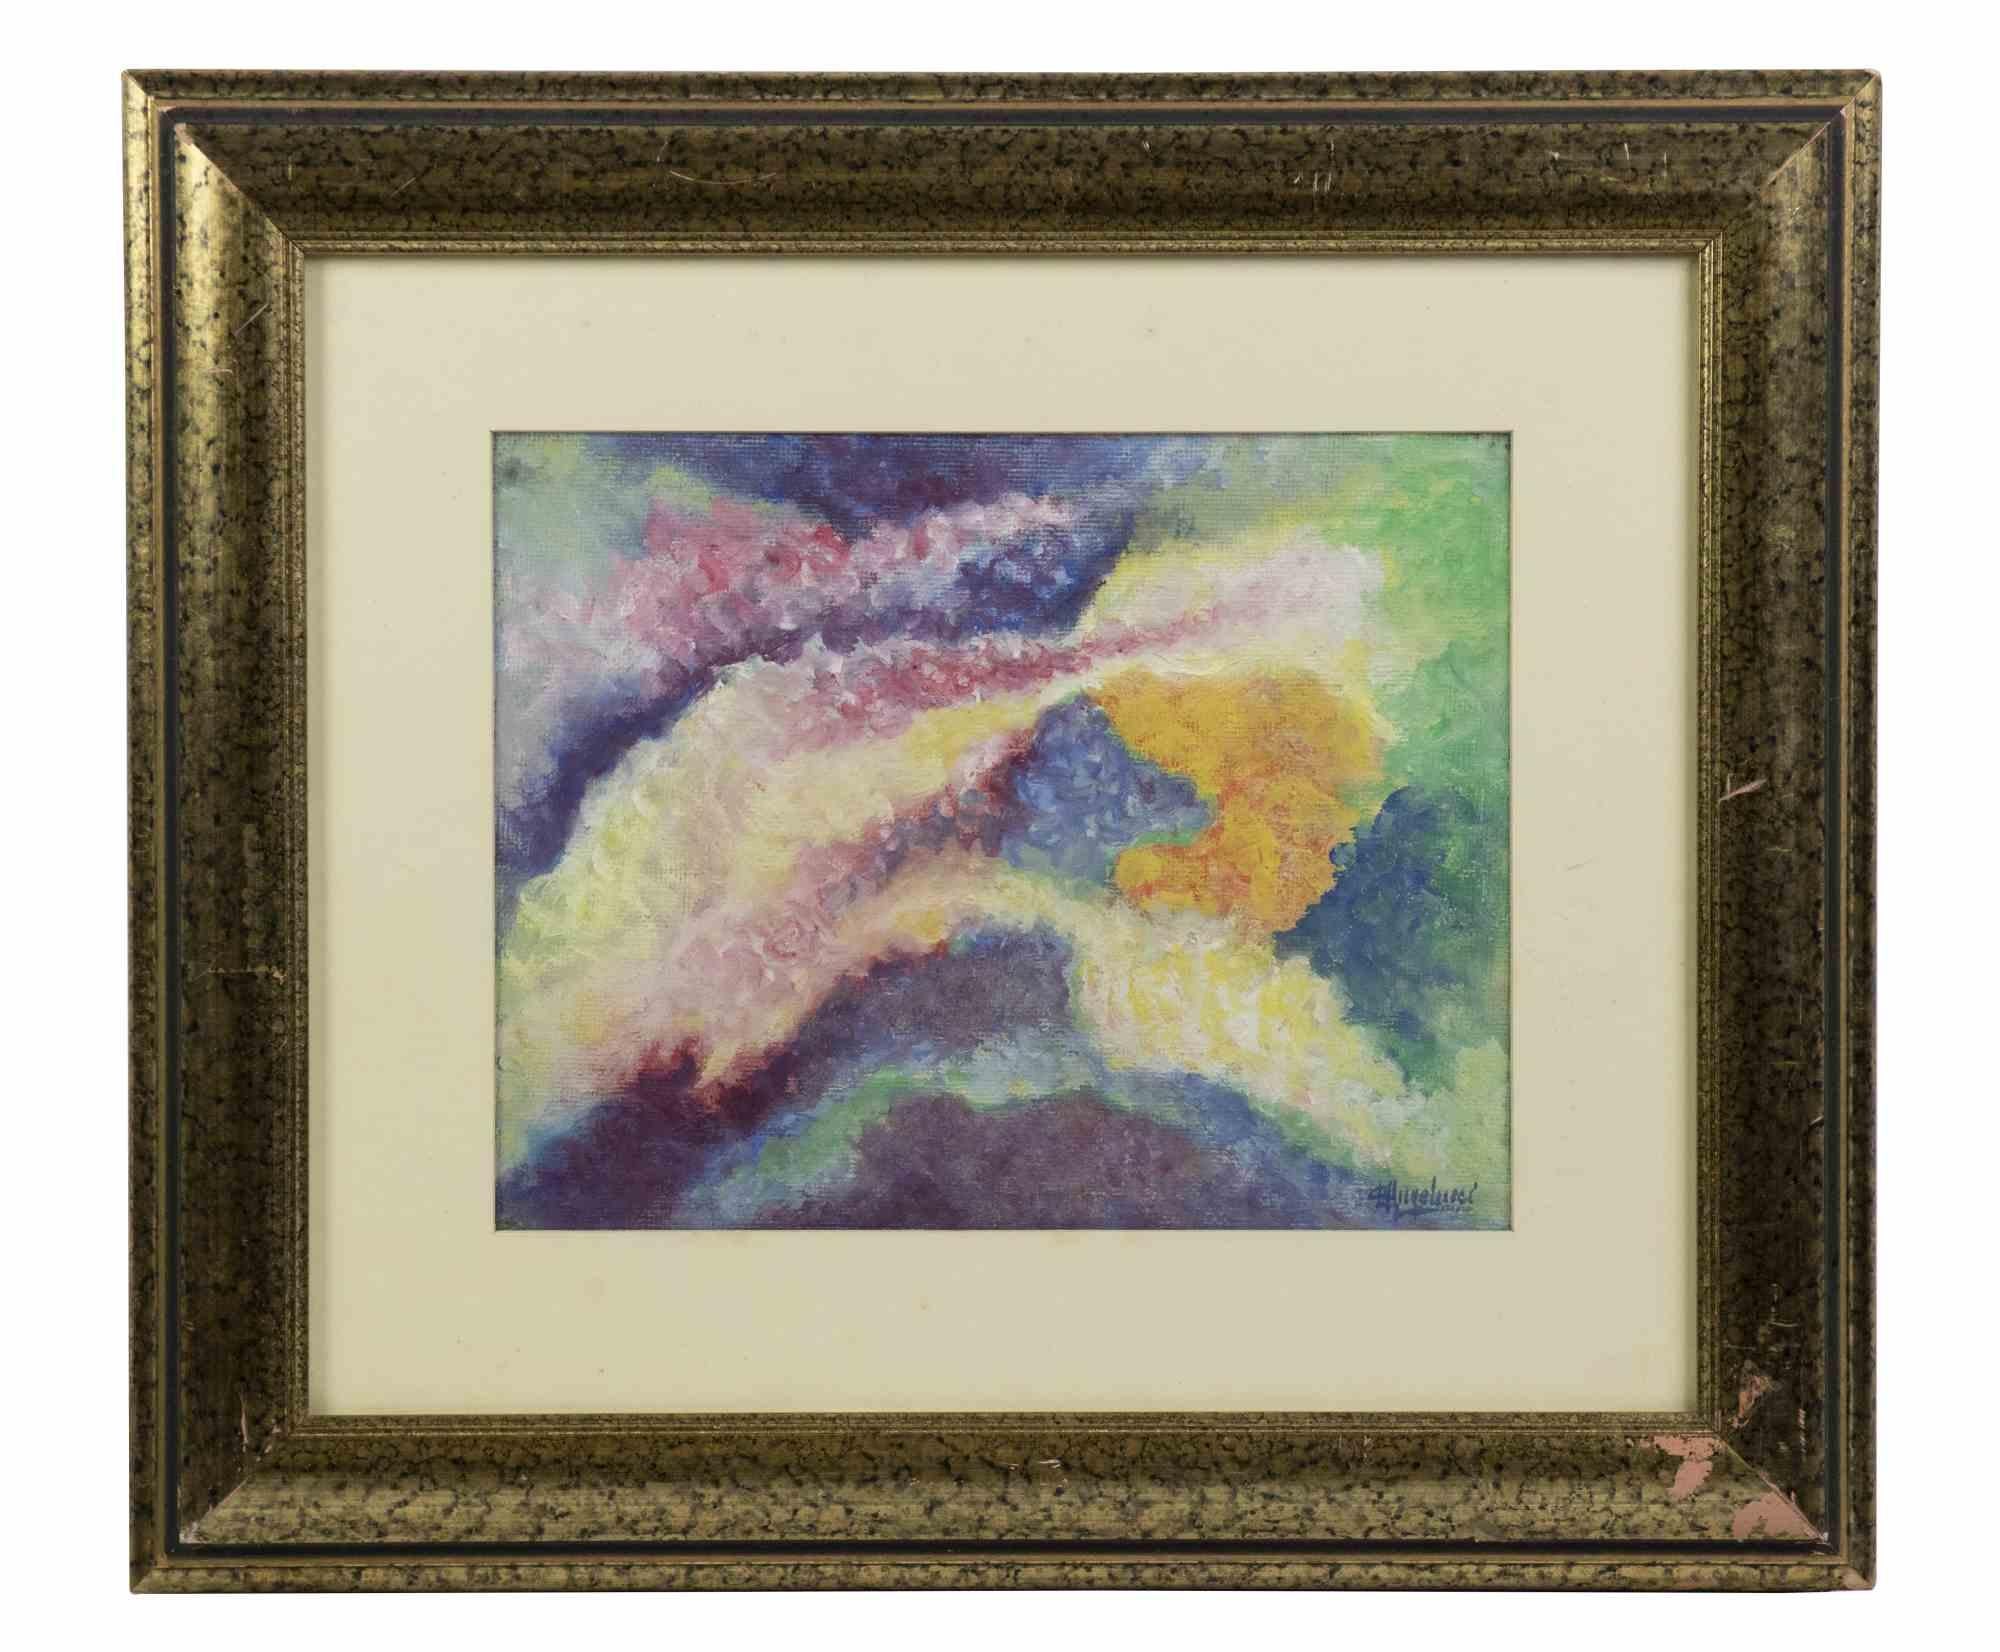 Cosmic Fantasy ist ein Originalkunstwerk von Leandra Angelucci aus dem Jahr 1936.

Gemischte farbige Tempera auf Papier.

Inklusive Rahmen: 45 x 4 x 52 cm

Handsigniert am unteren rechten Rand.

Label auf der Rückseite.